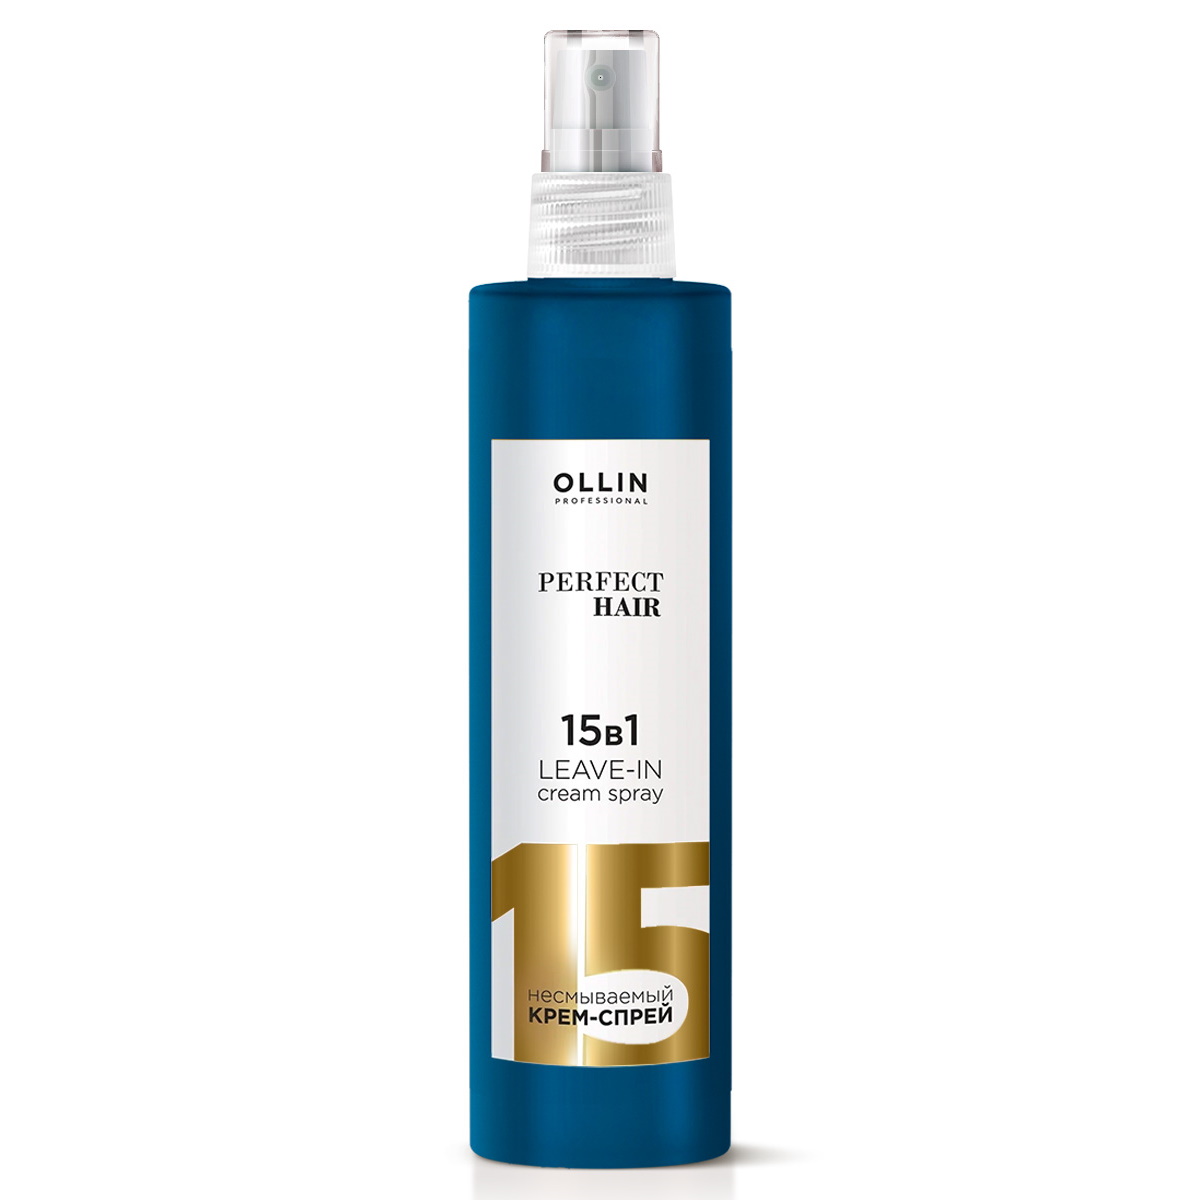 Крем-спрей Ollin PERFECT HAIR многофункциональный 15 в 1 несмываемый 15в1 для волос 250 мл - фото 1